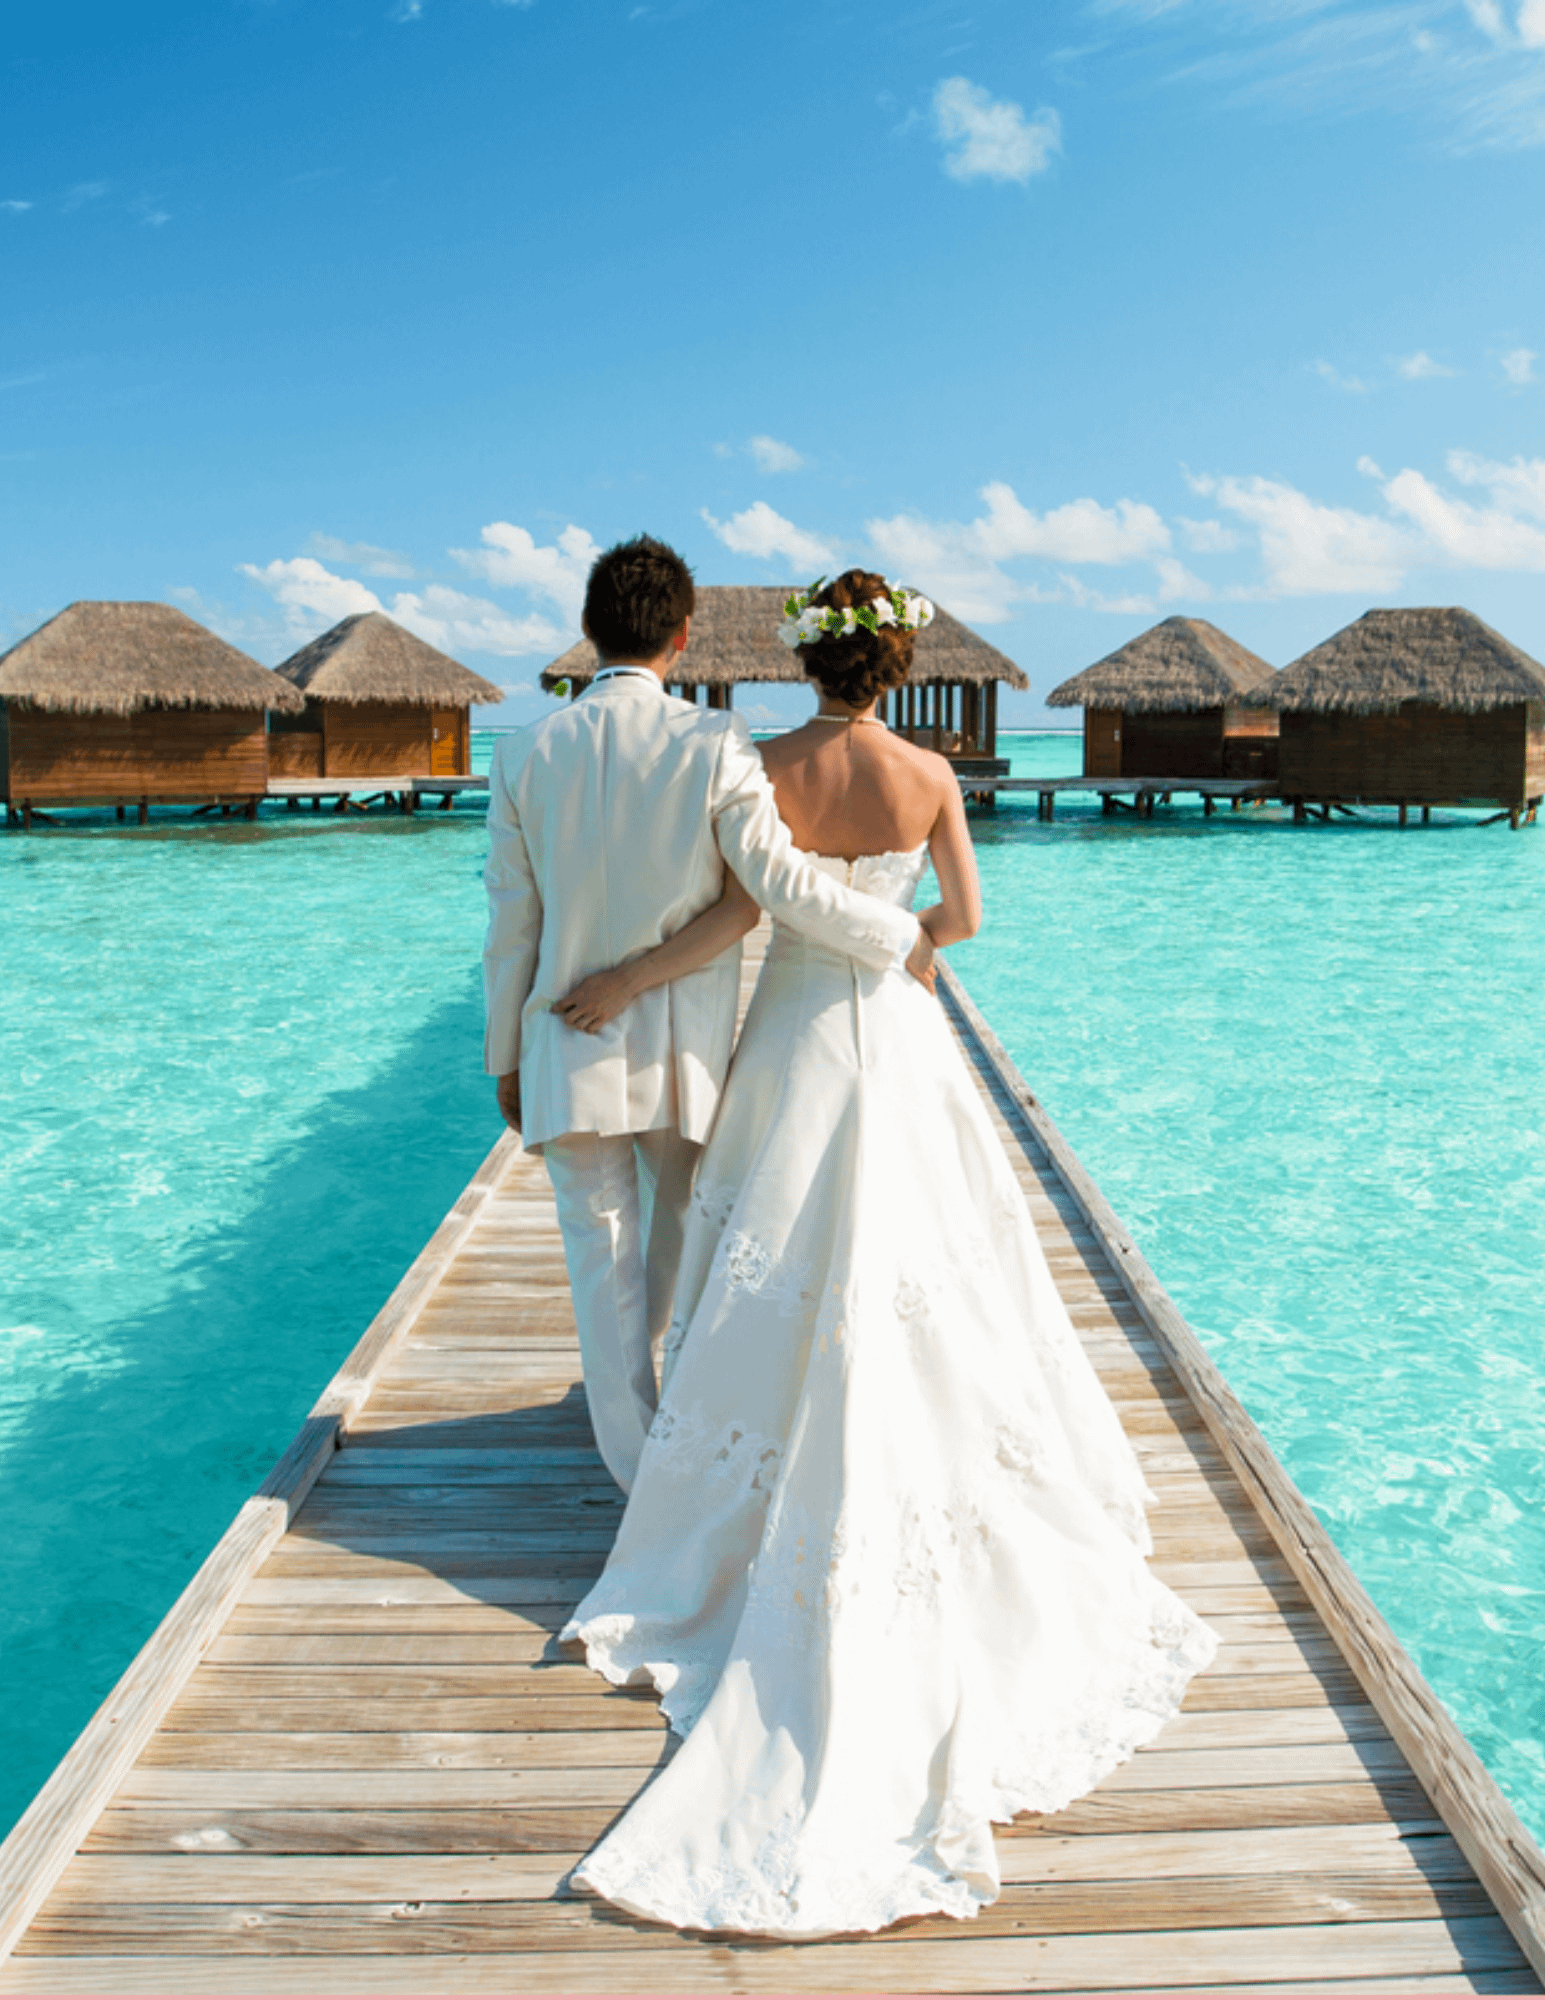 Sposarsi alle Maldive: un sogno romantico tra spiagge paradisiache e acque cristalline